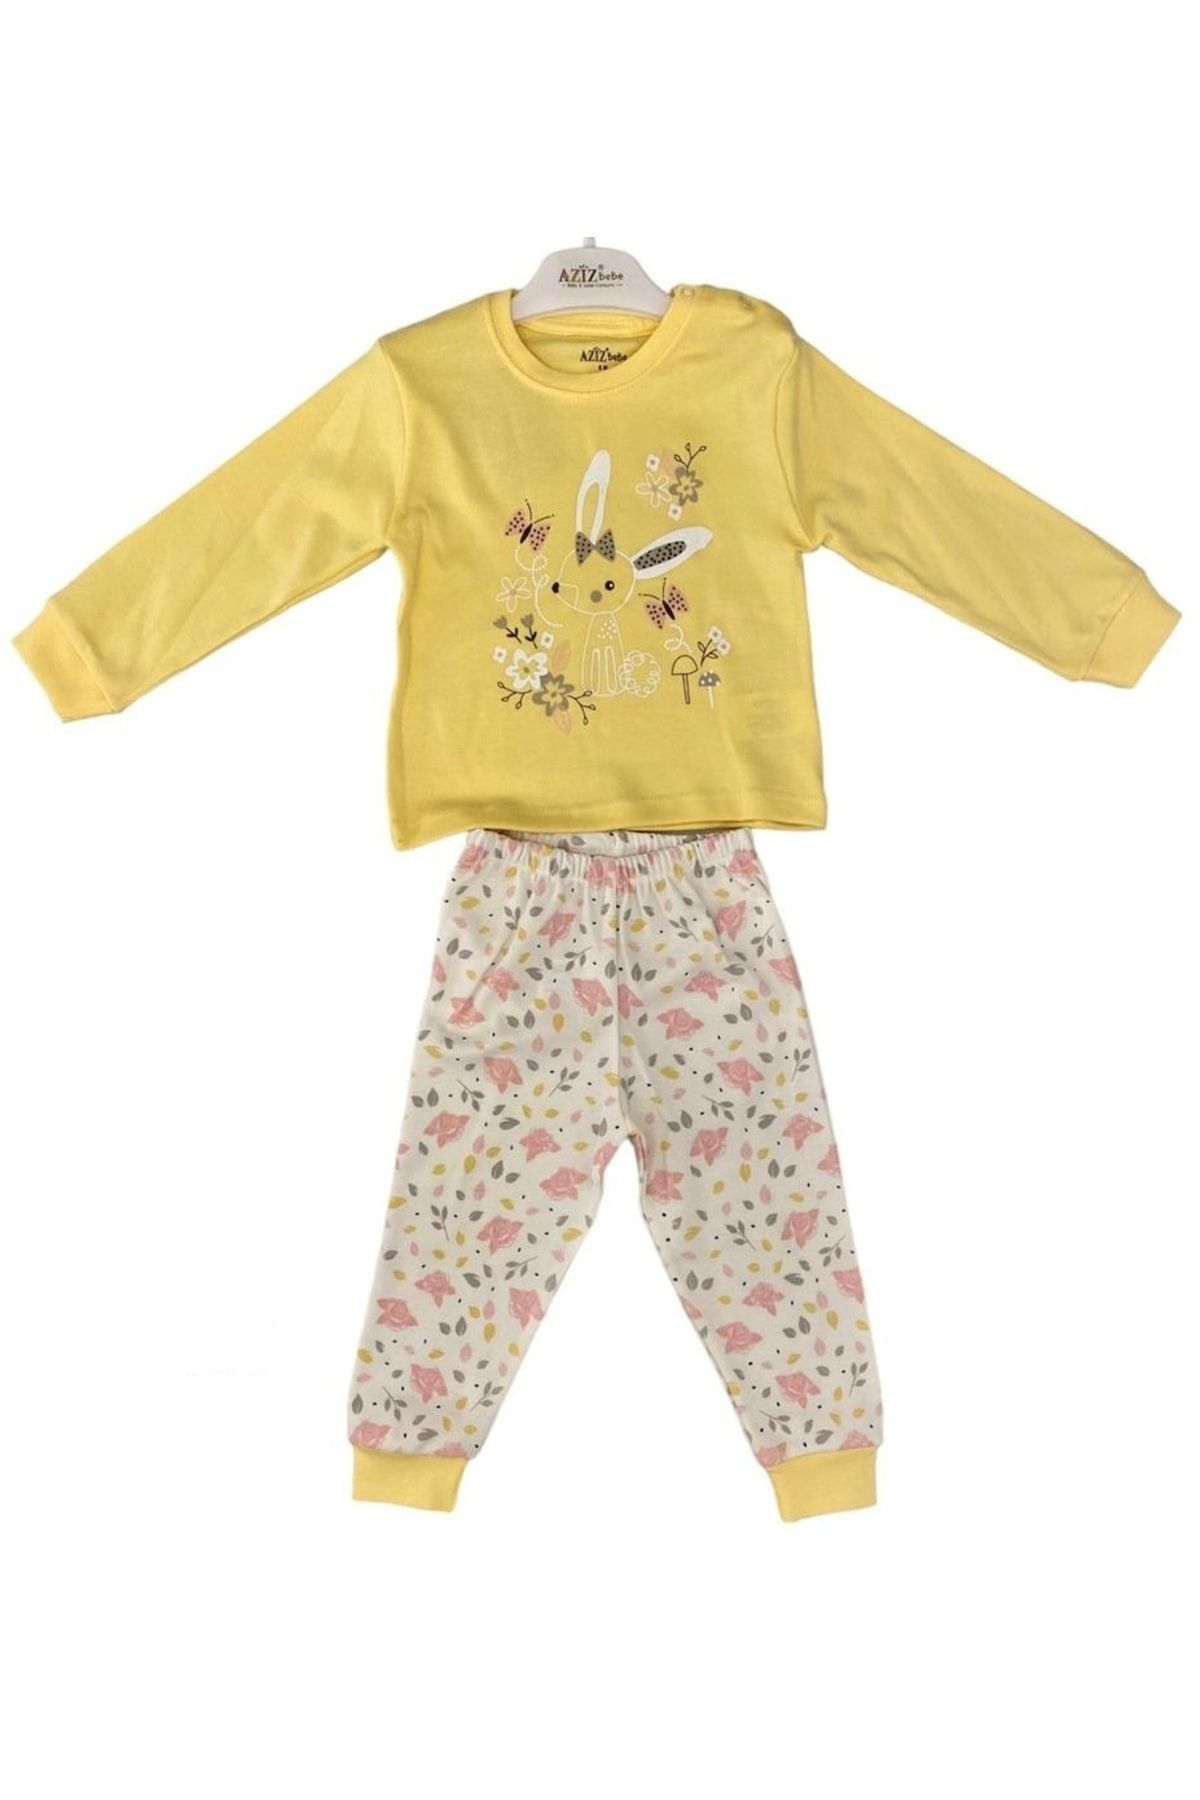 Aziz Bebe Tavşanlı Çiçekli Pijama Takım9469